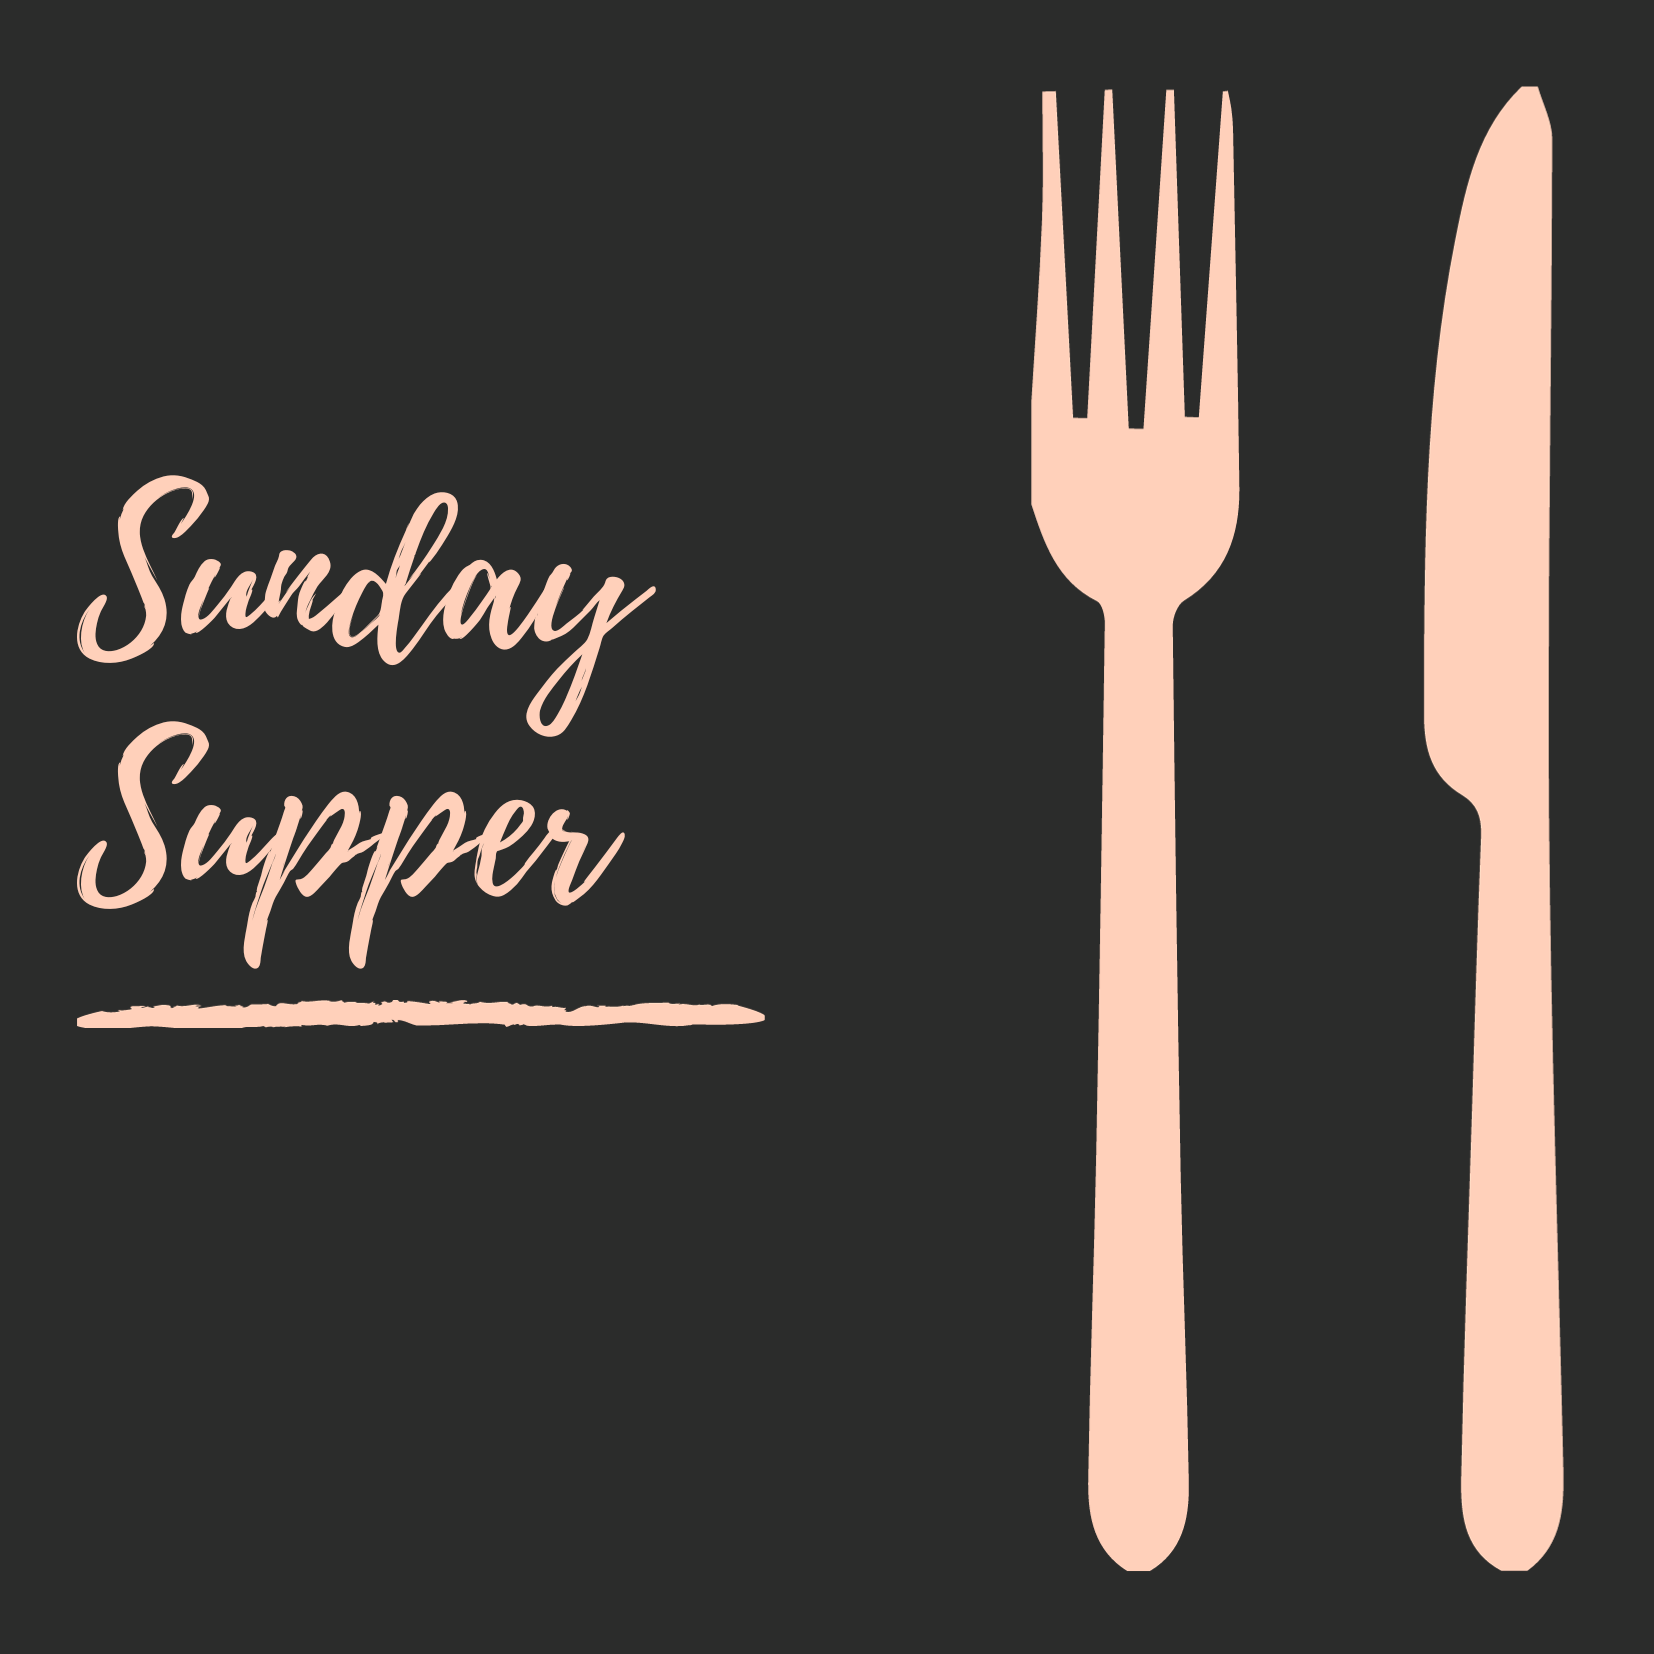 Sunday Supper- Vin Room Mission